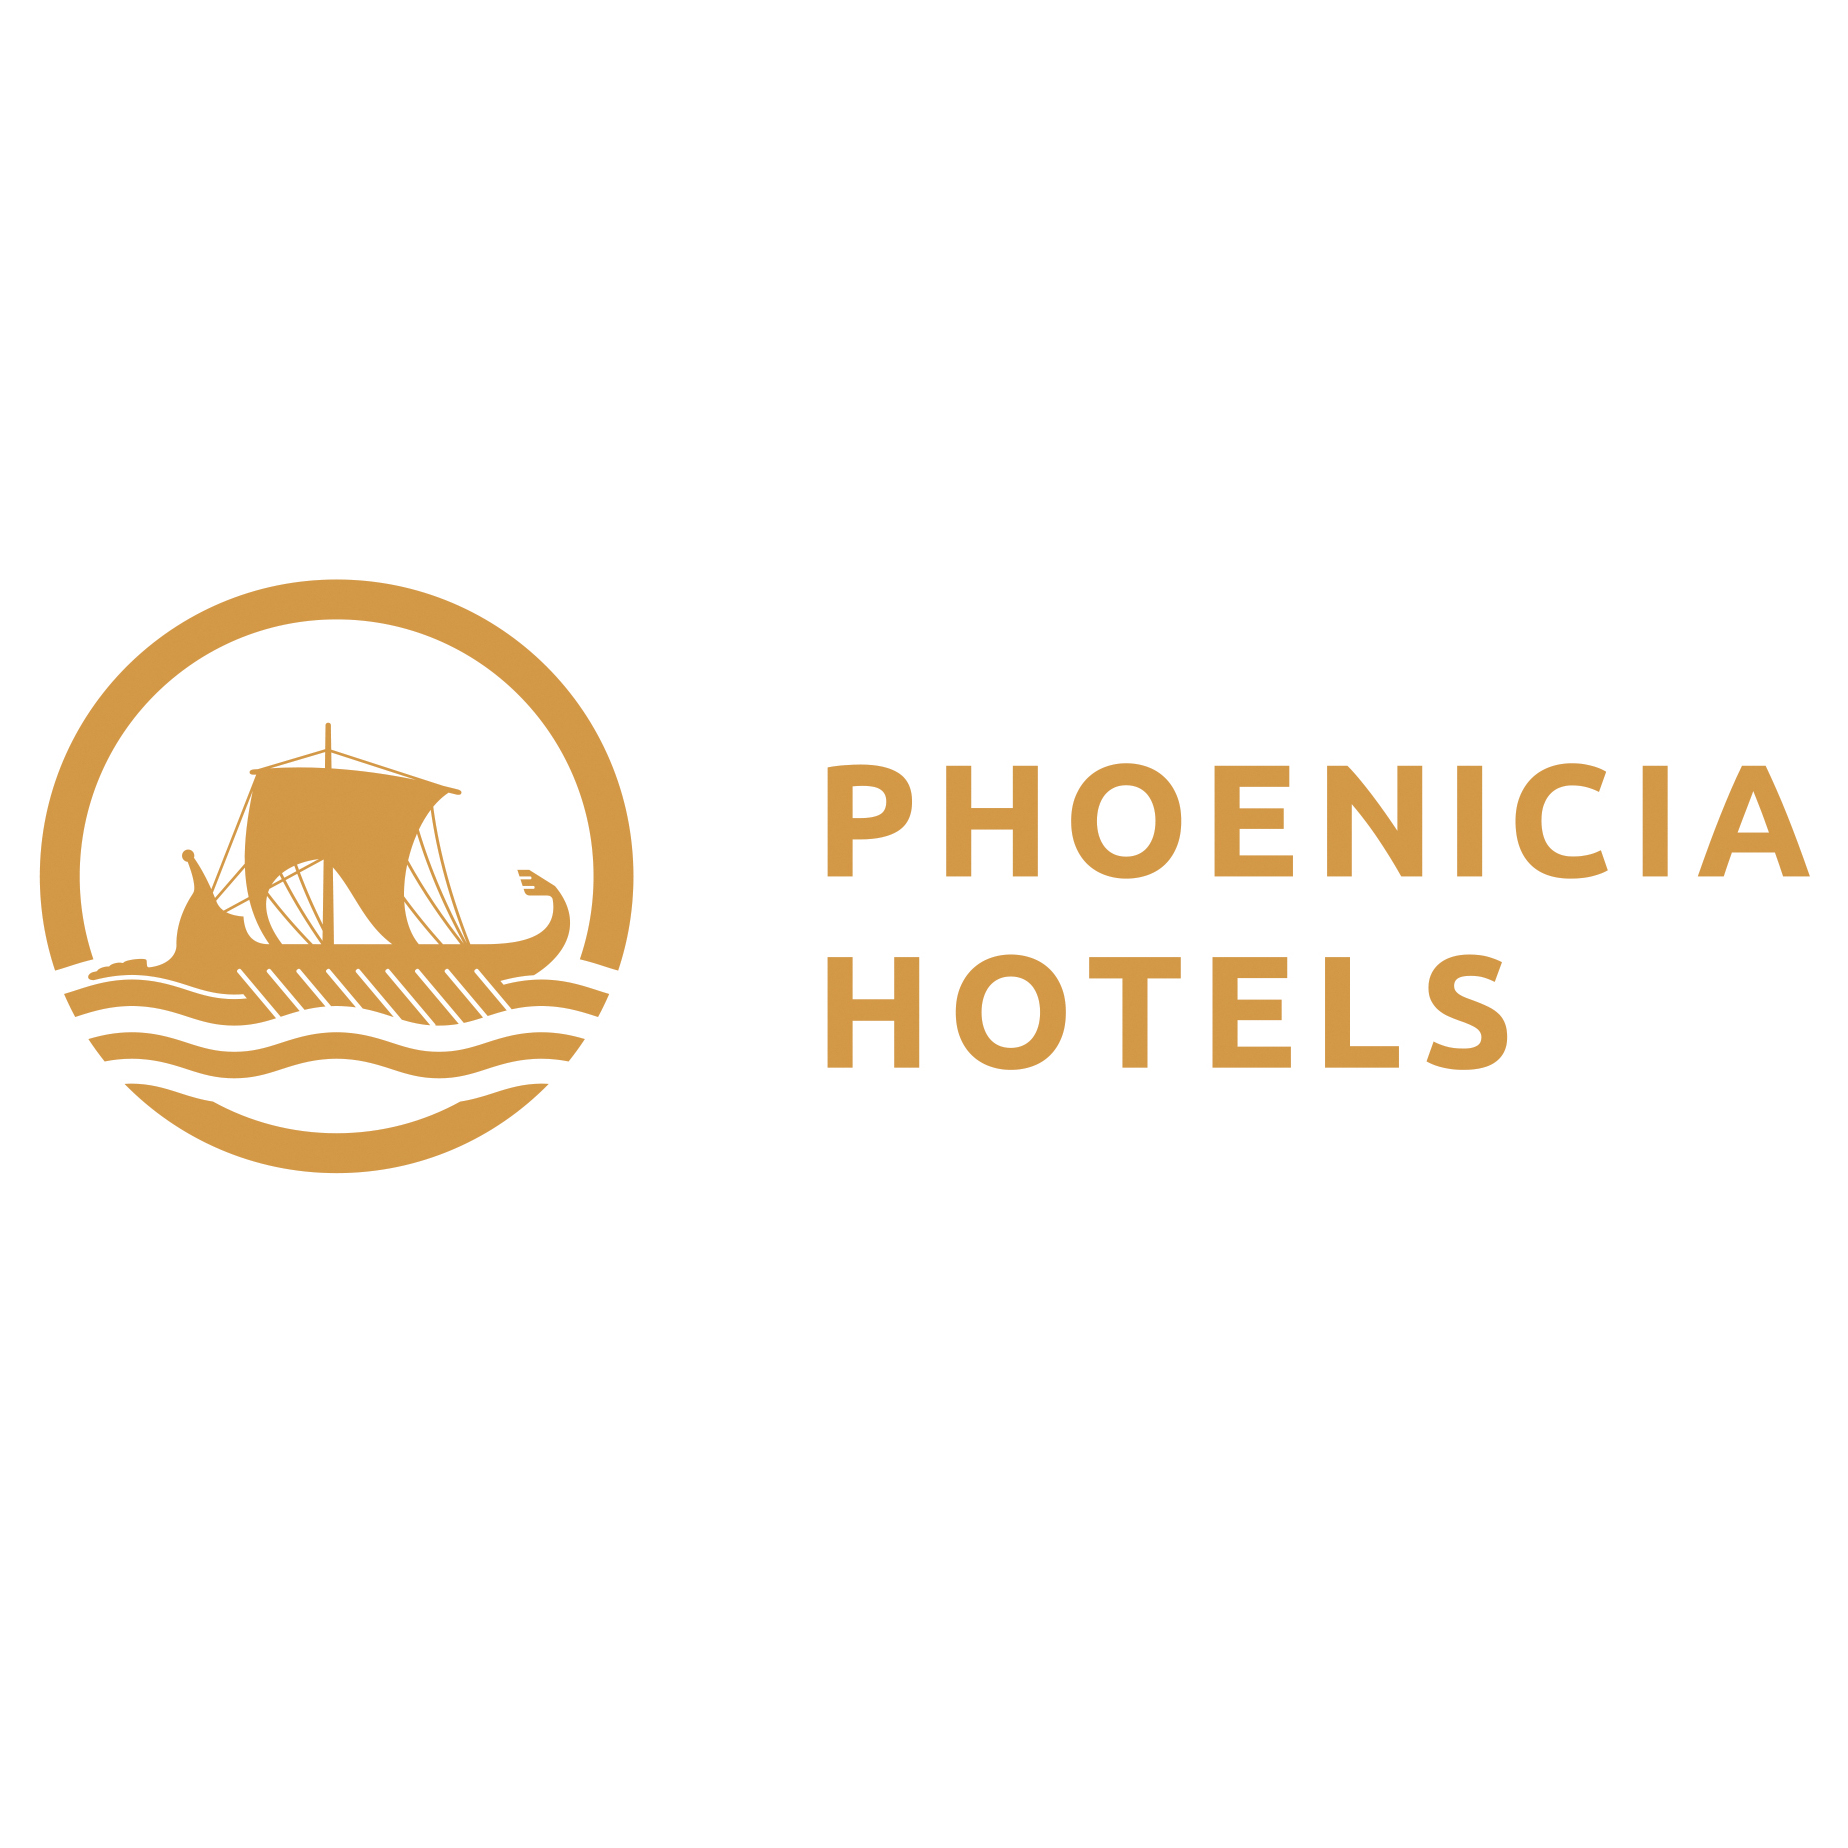 Phoenicia Hotels